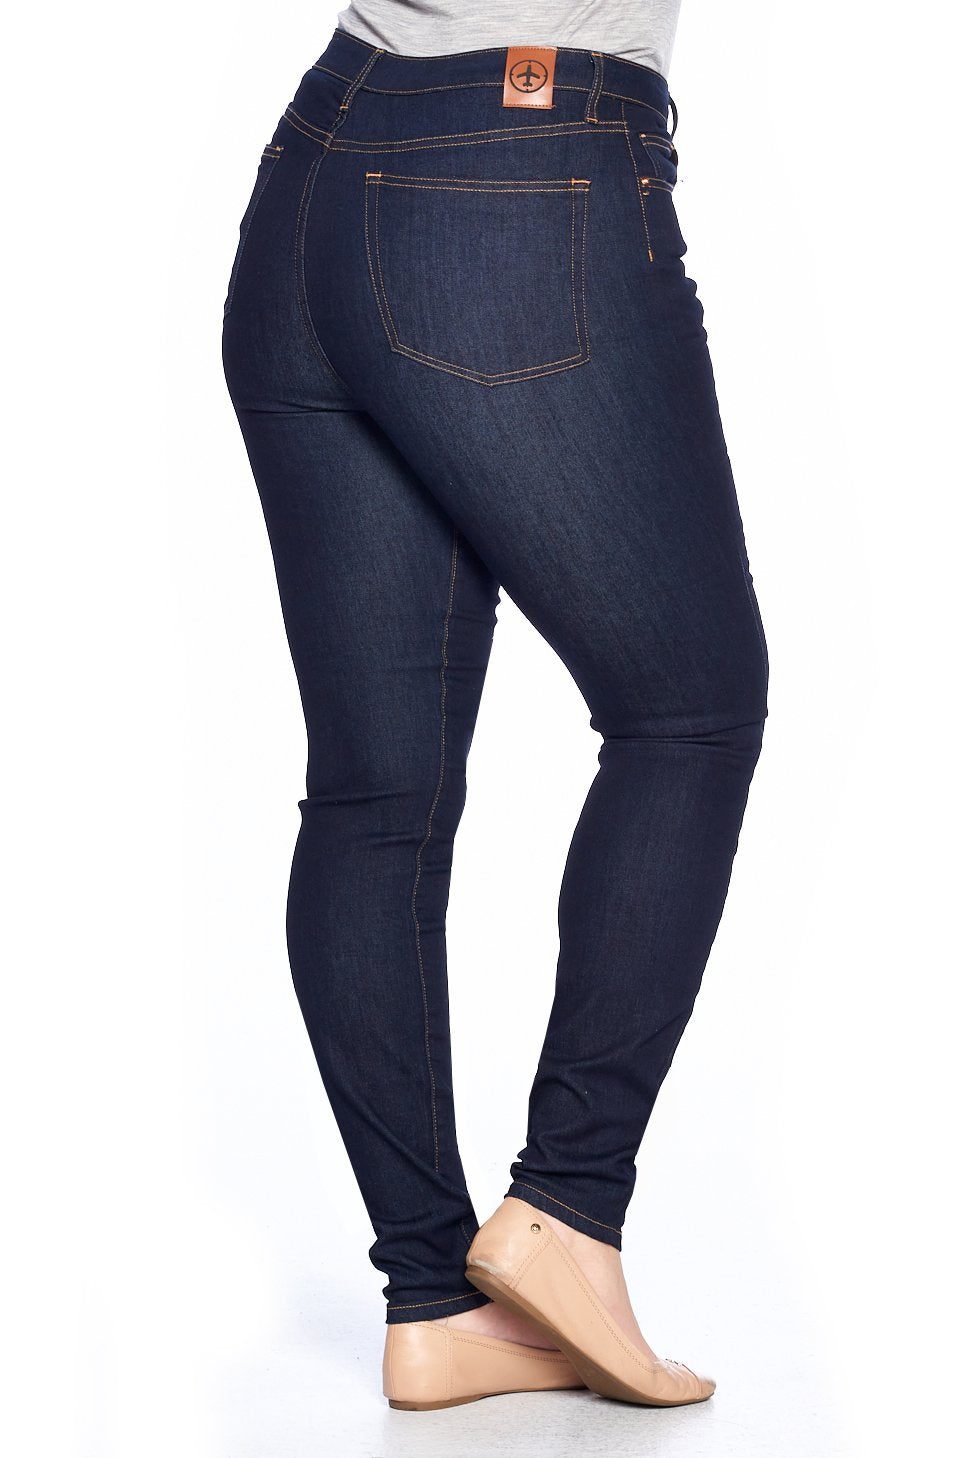 Blue Skinny Jeans for Women  SOUL OF NOMAD Women's Denim Akira Miramar